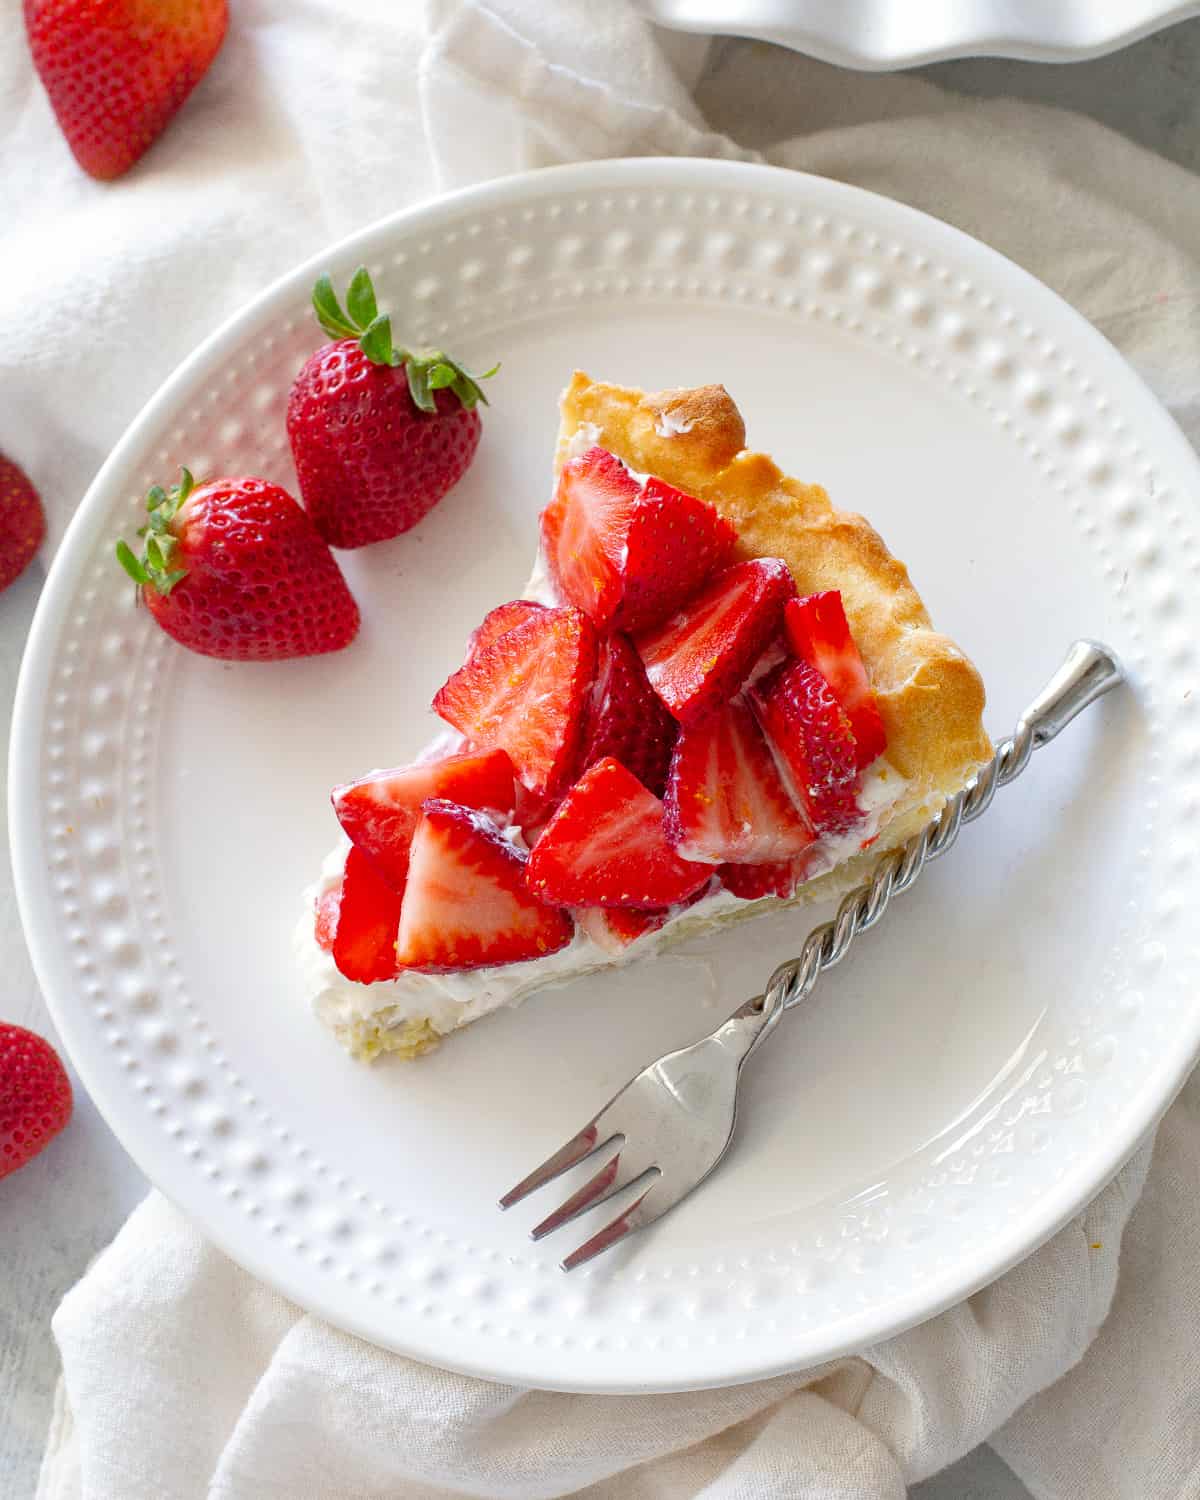 Strawberry Cream Puff Cake